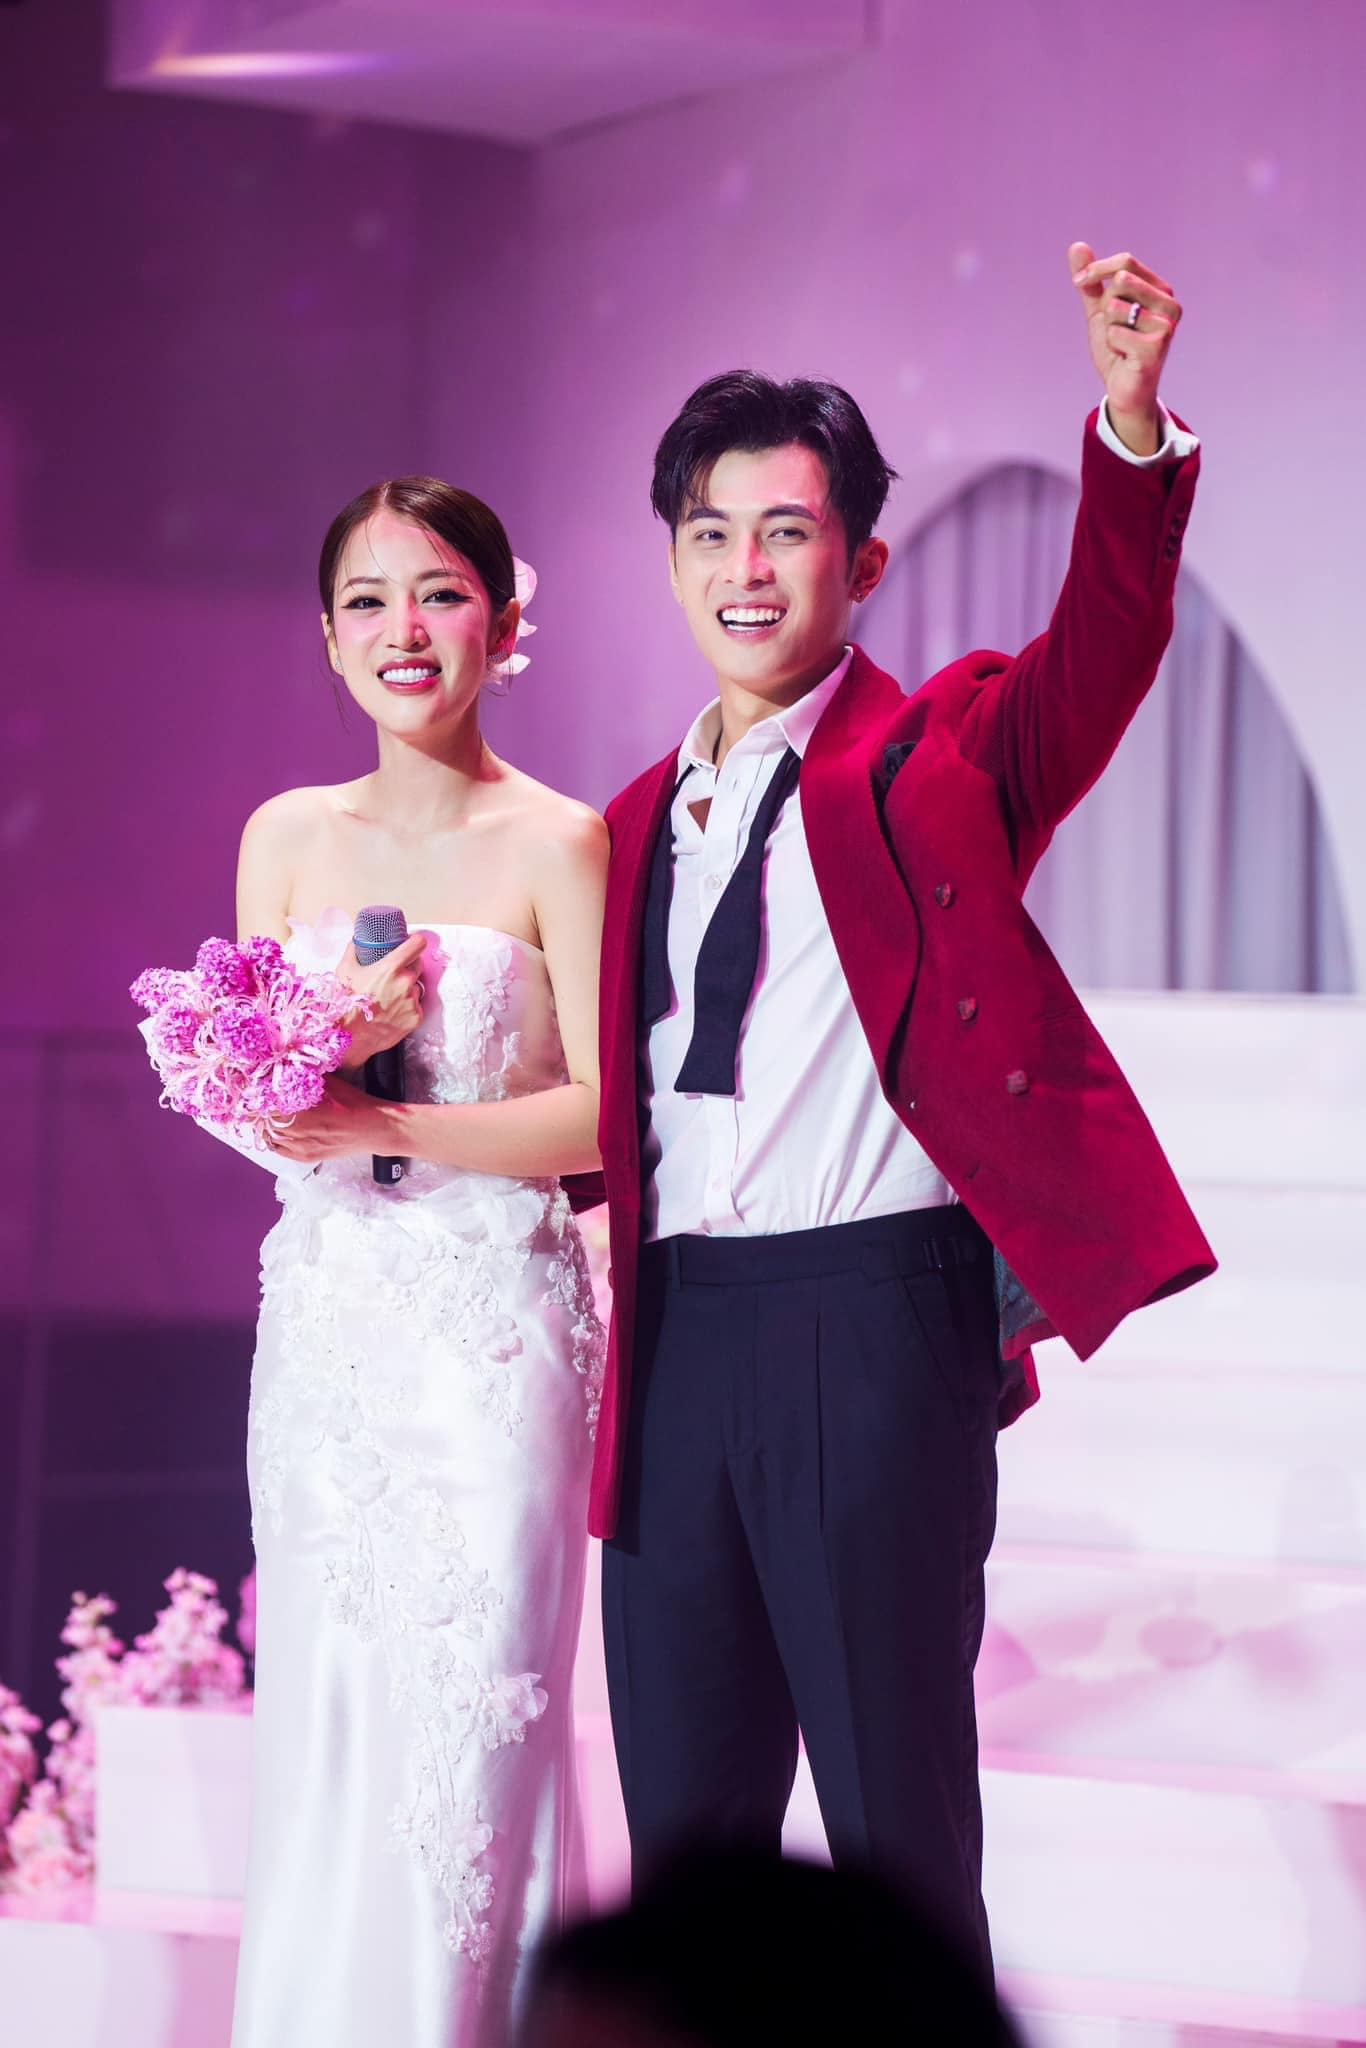 Sao Việt rộn ràng hội ngộ tại đám cưới Puka - Gin Tuấn Kiệt, Dương Lâm diện style 'trai làng' gây chấn động - ảnh 9